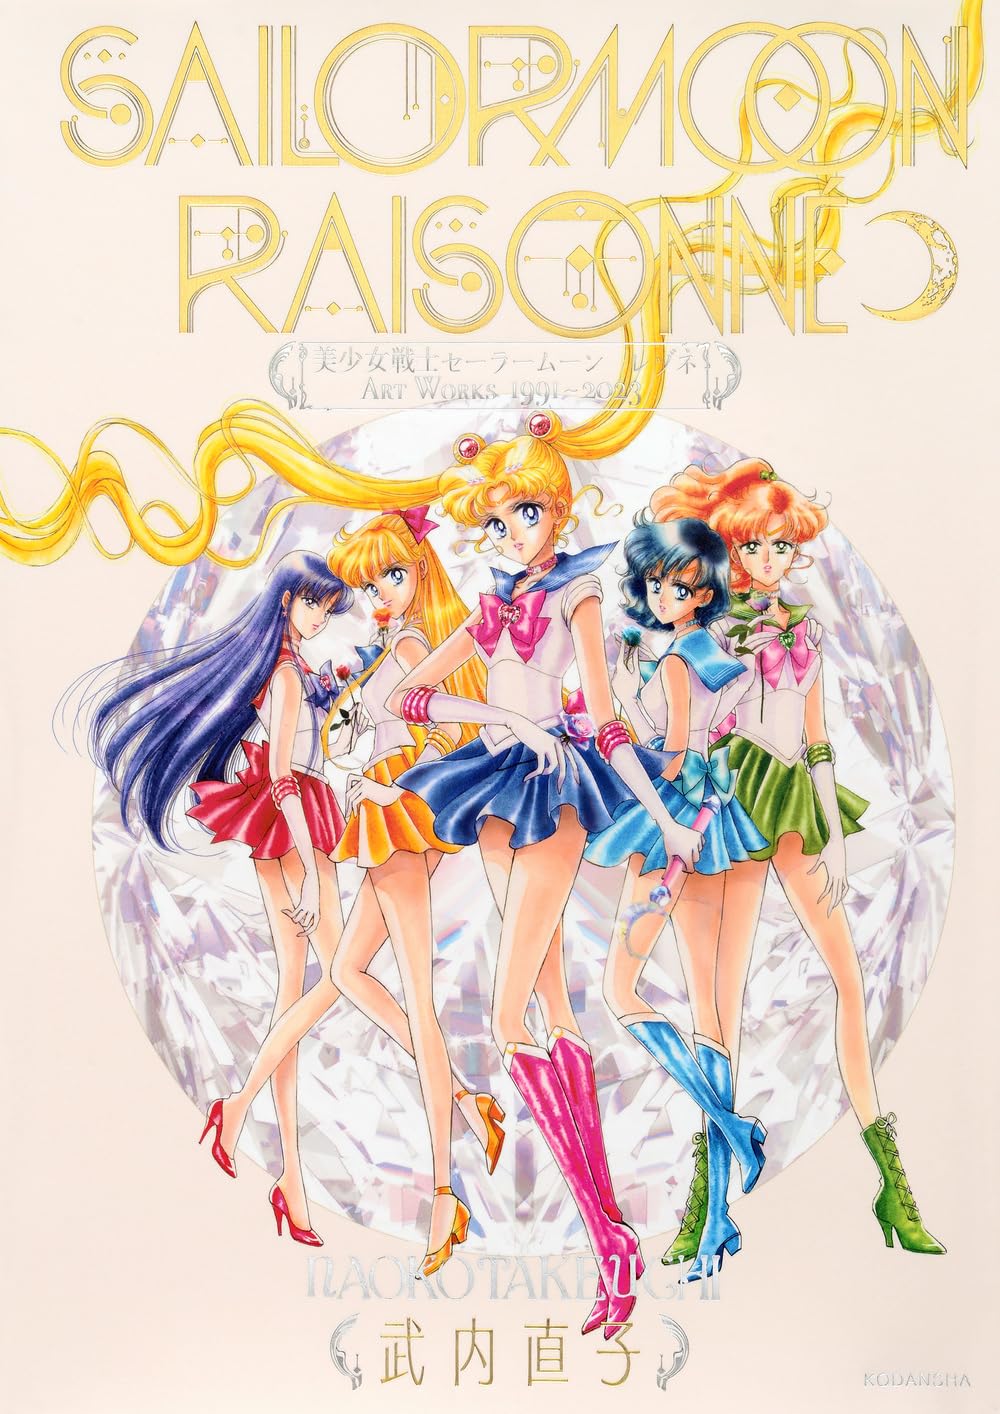 Artbook Sailor Moon Artworks Raisonne